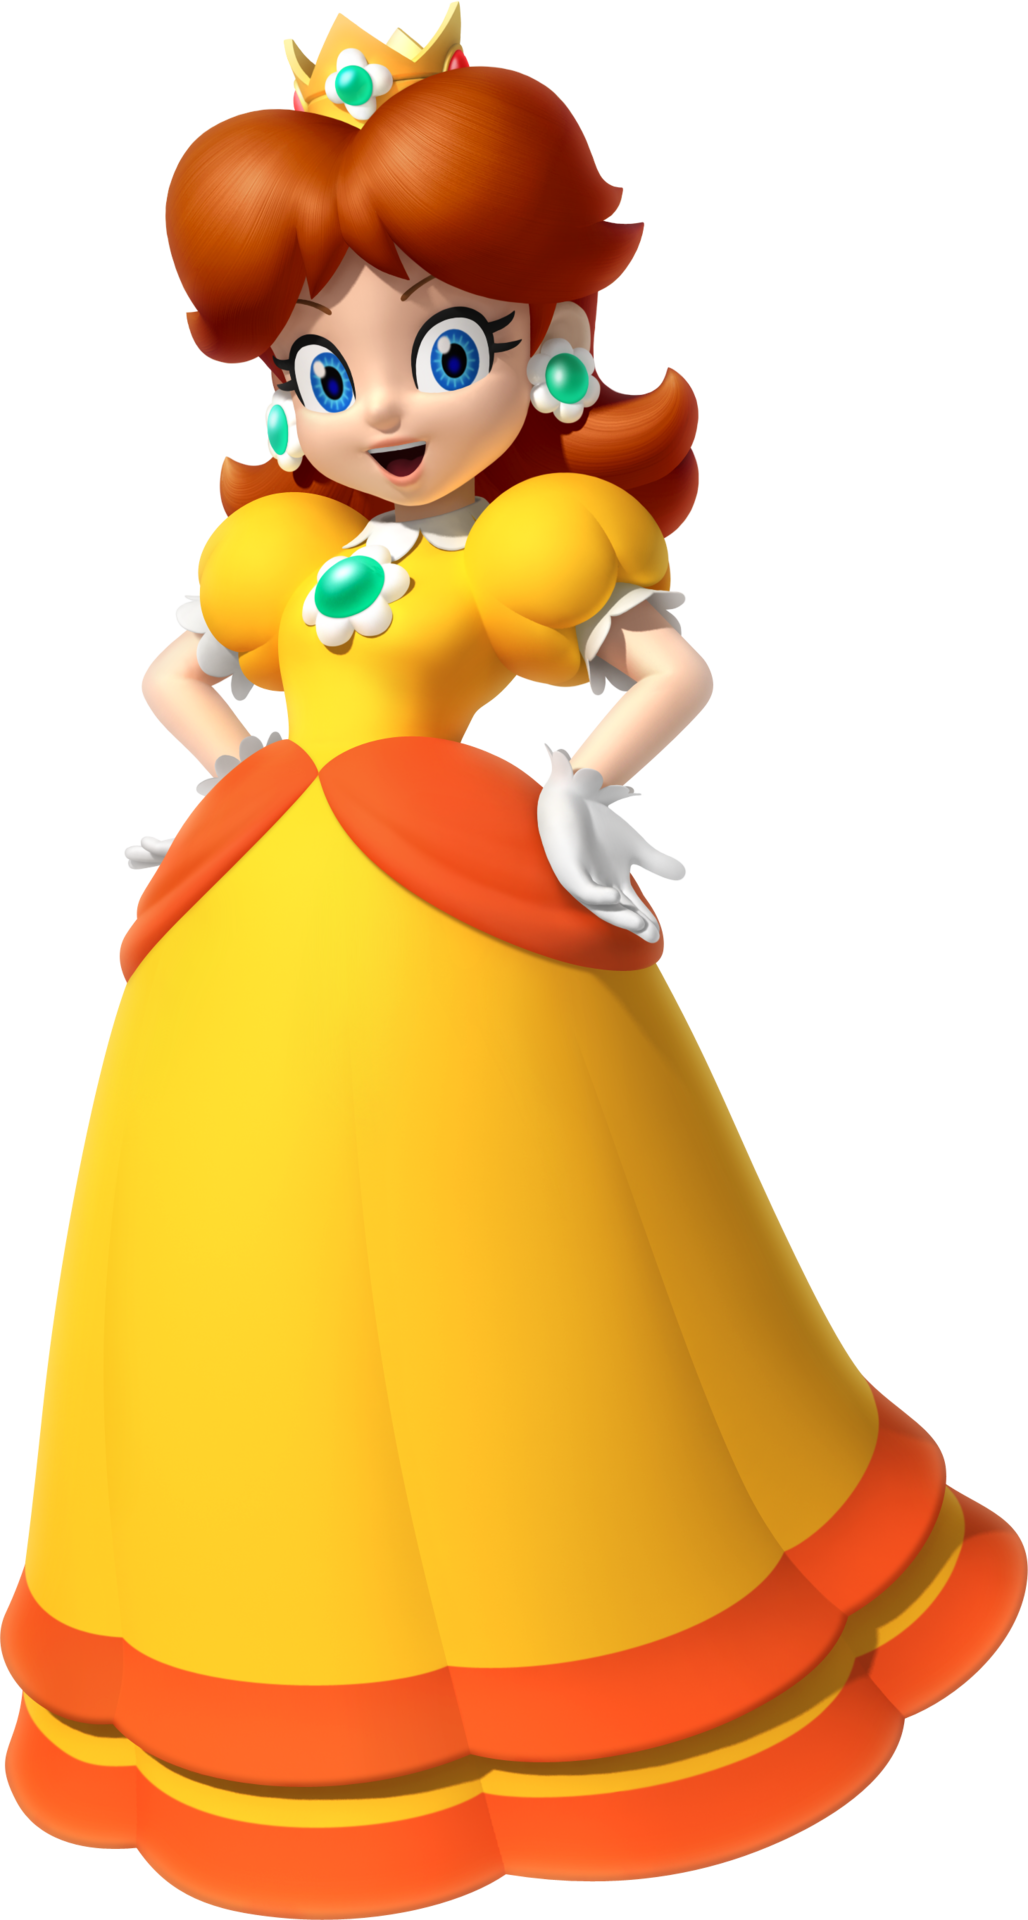 Mario Characters Princess Peach Daisy 